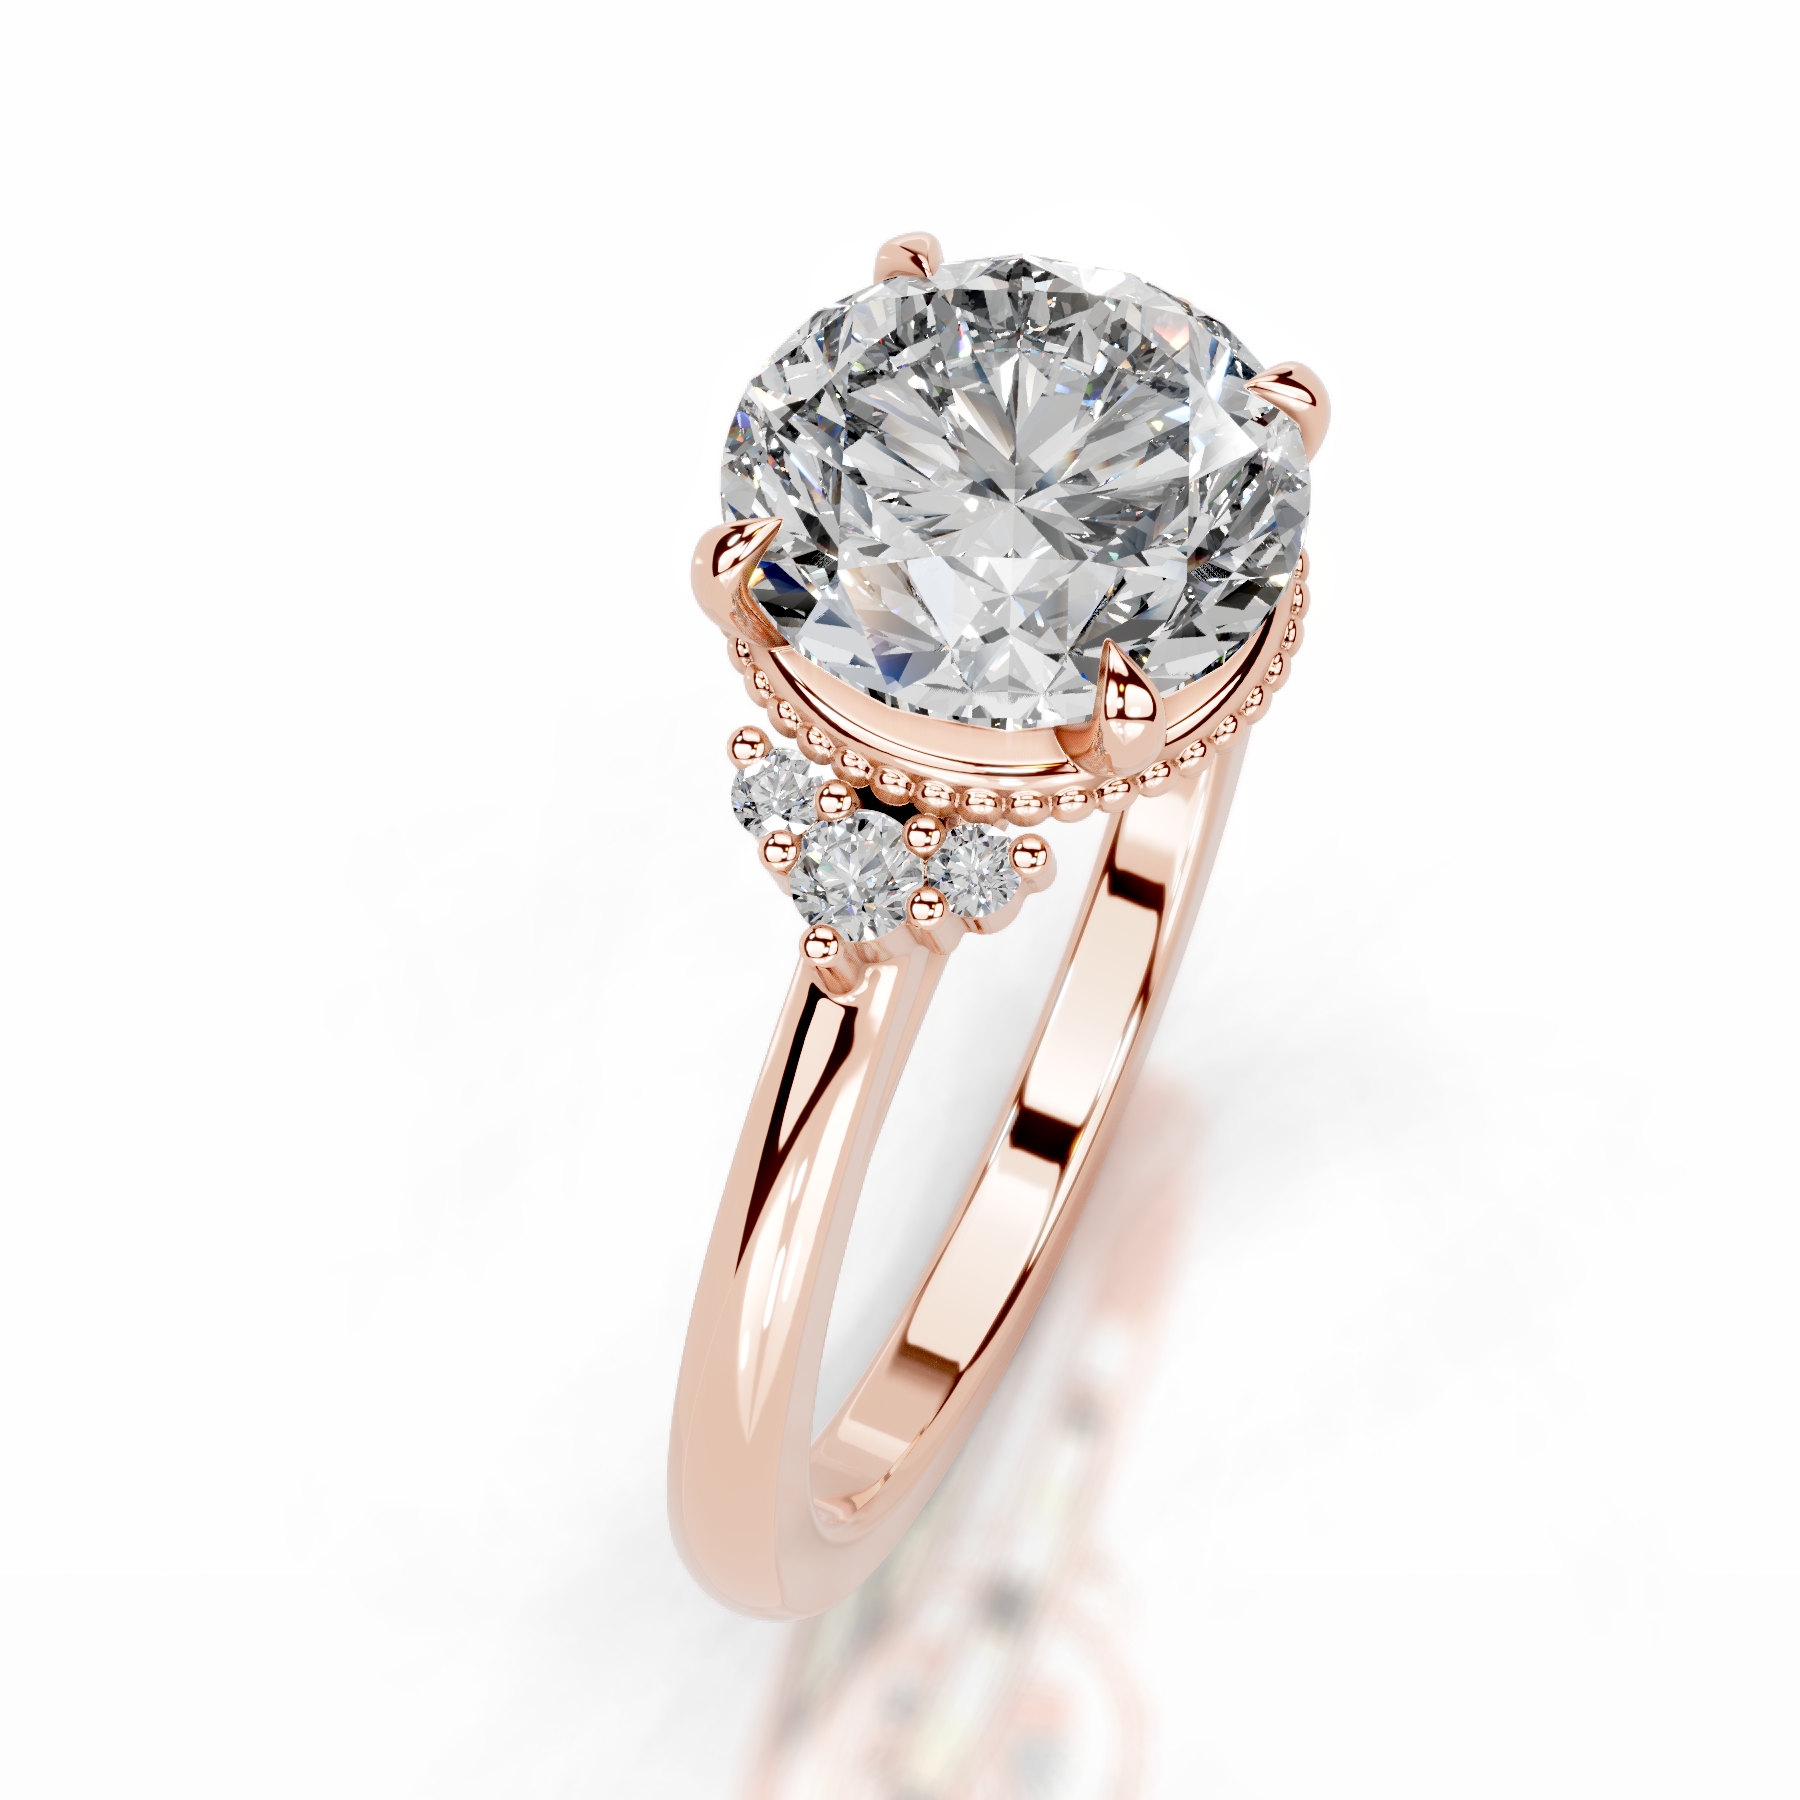 Natasha Diamond Engagement Ring   (2.10 Carat) -14K Rose Gold